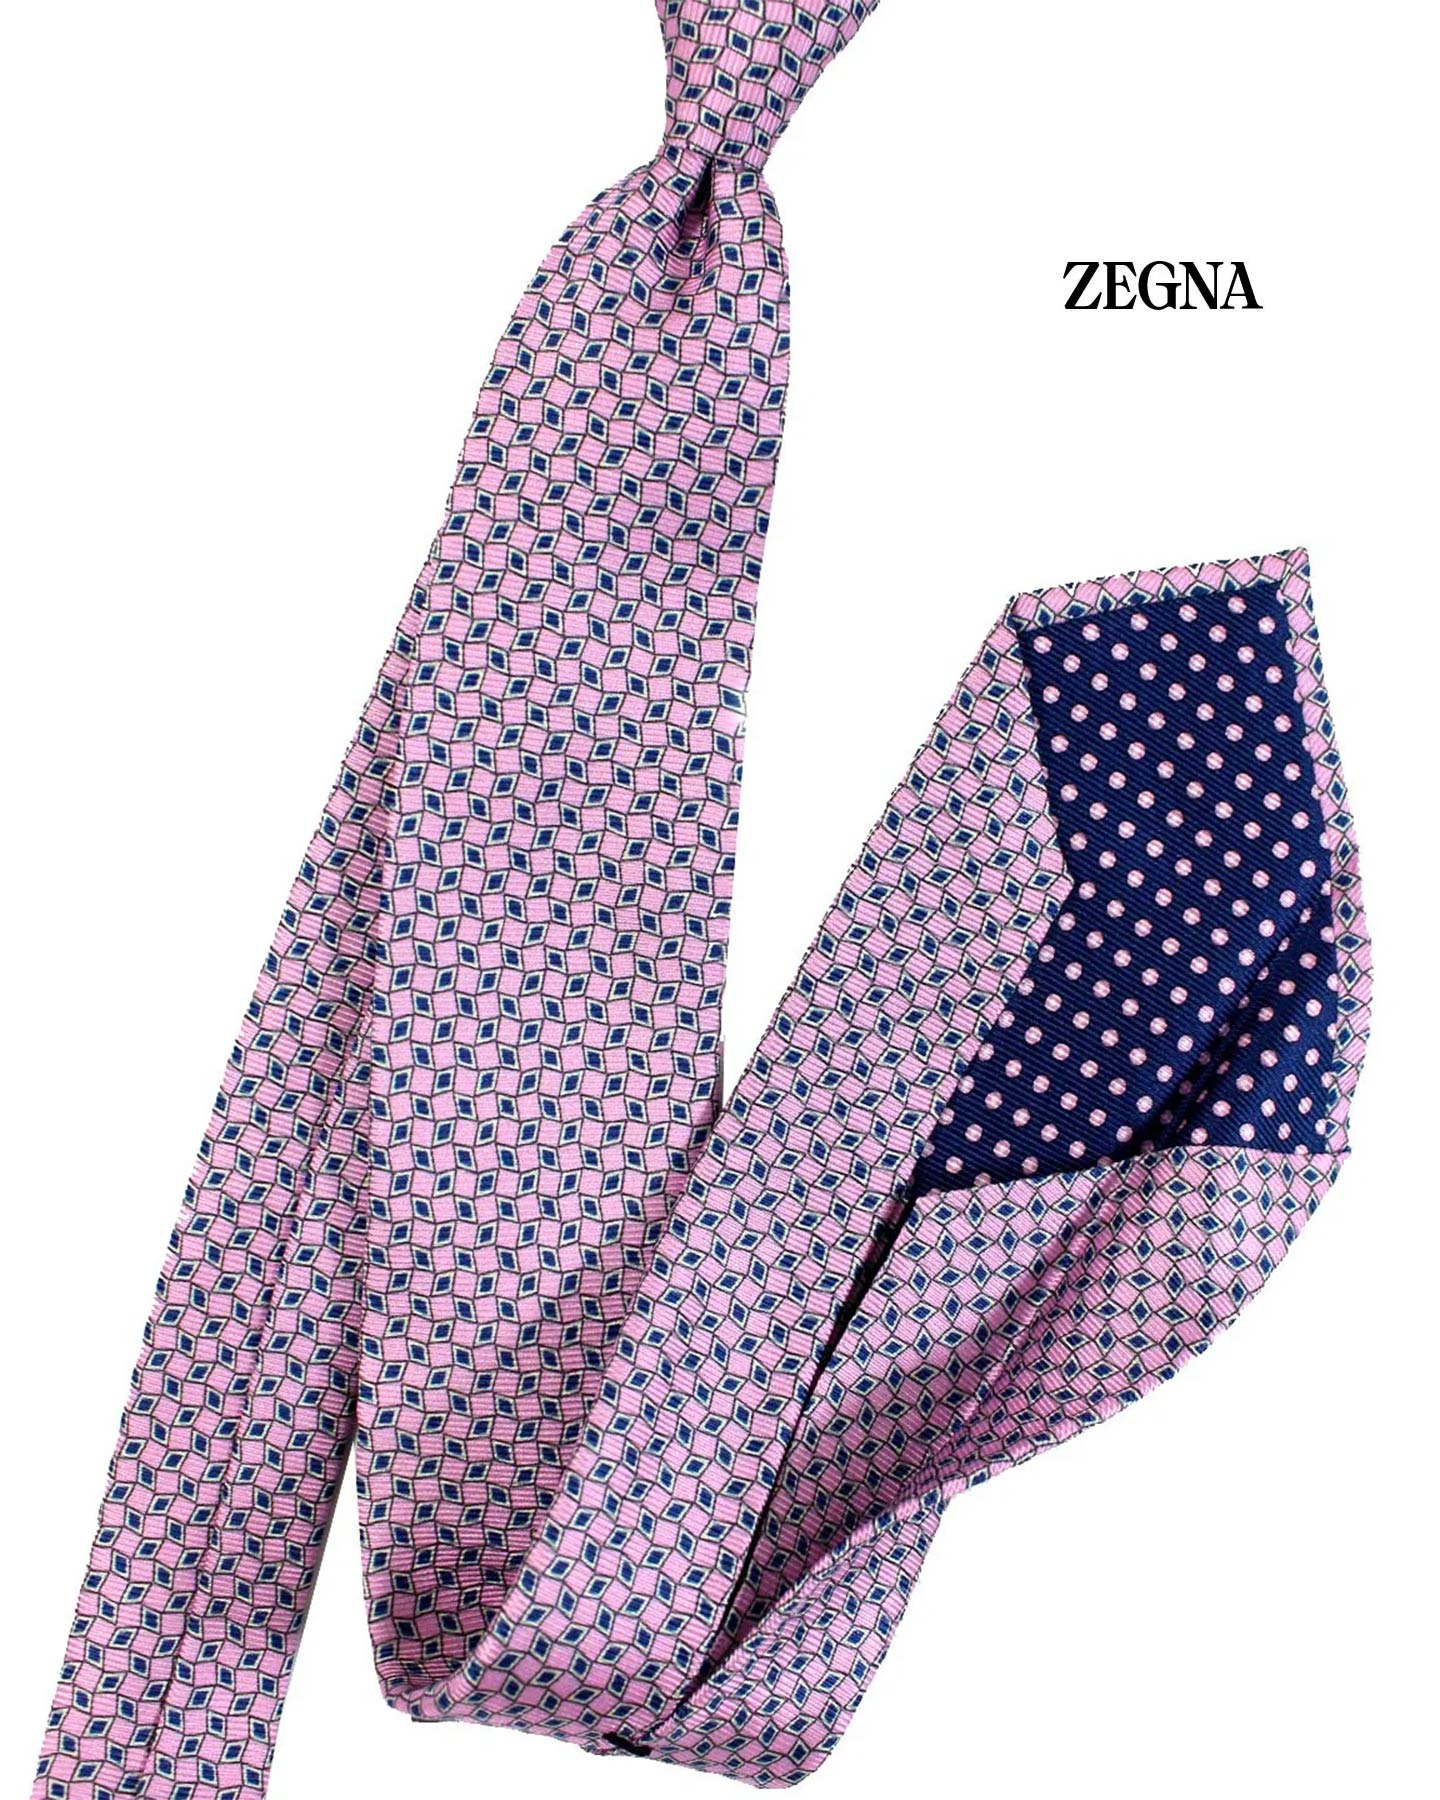 Ermenegildo Zegna Sevenfold Tie Pink Geometric - Zegna 5 Pieghe Narrow Tie